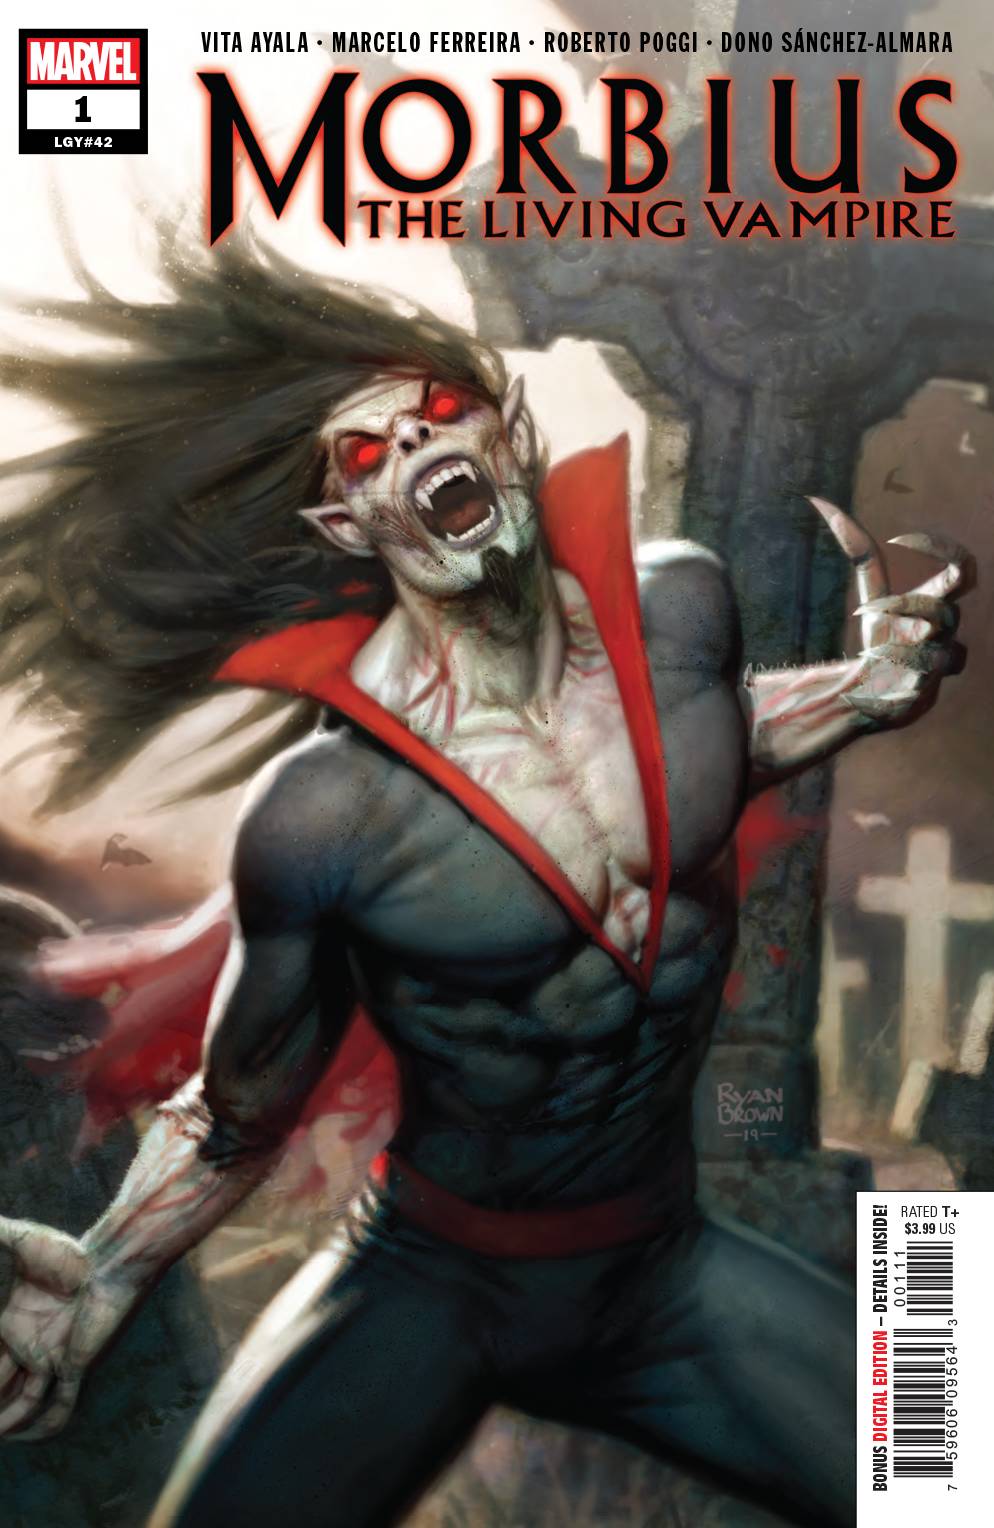 Morbius #1